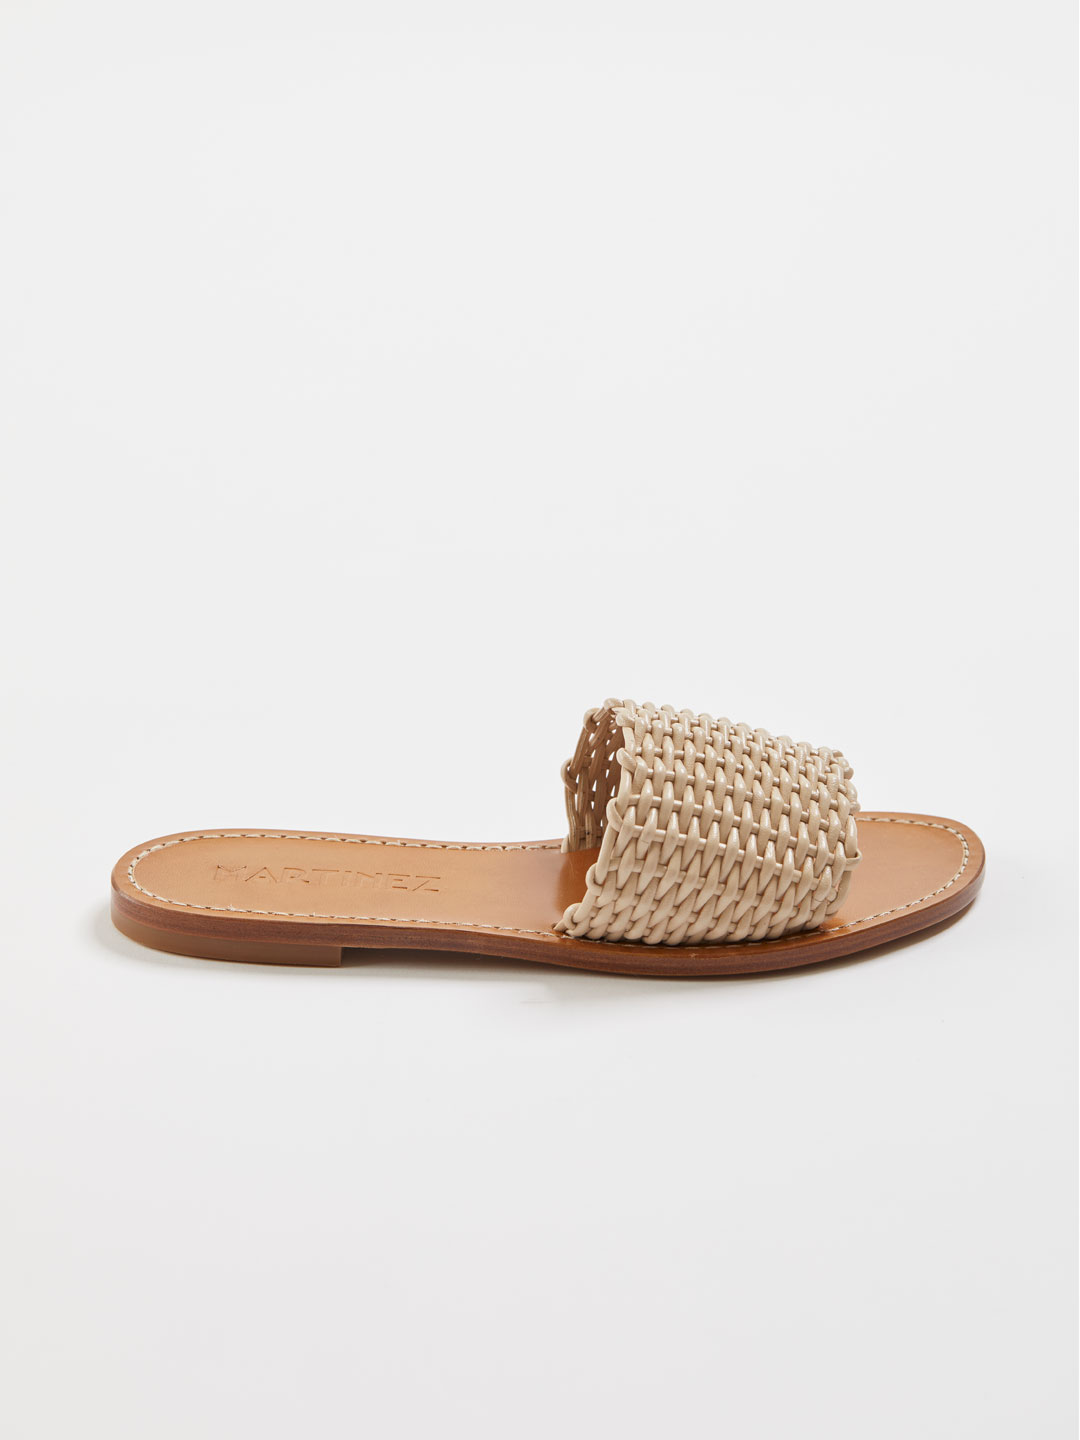 PLAYA CESTA Woven Flat Sandals - Natural